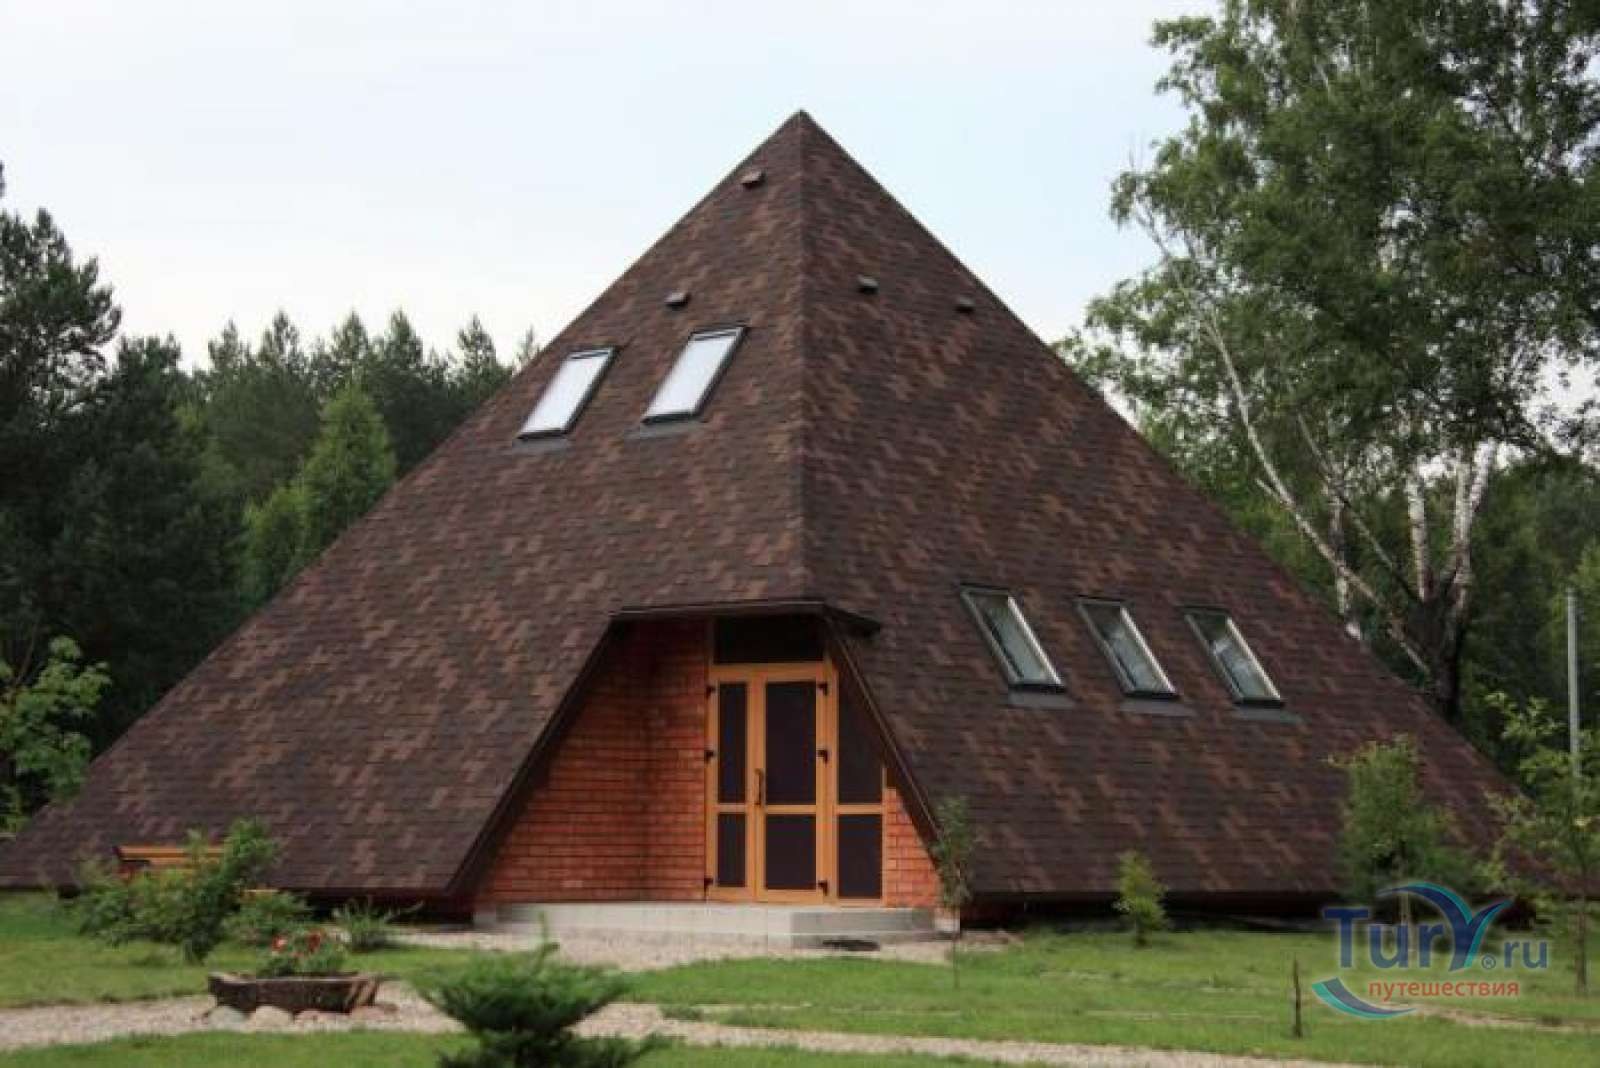 Дом с крышей на 4 стороны. Пирамида дом. Треугольная крыша. Дом с треугольной крышей. Дом в виде пирамиды.